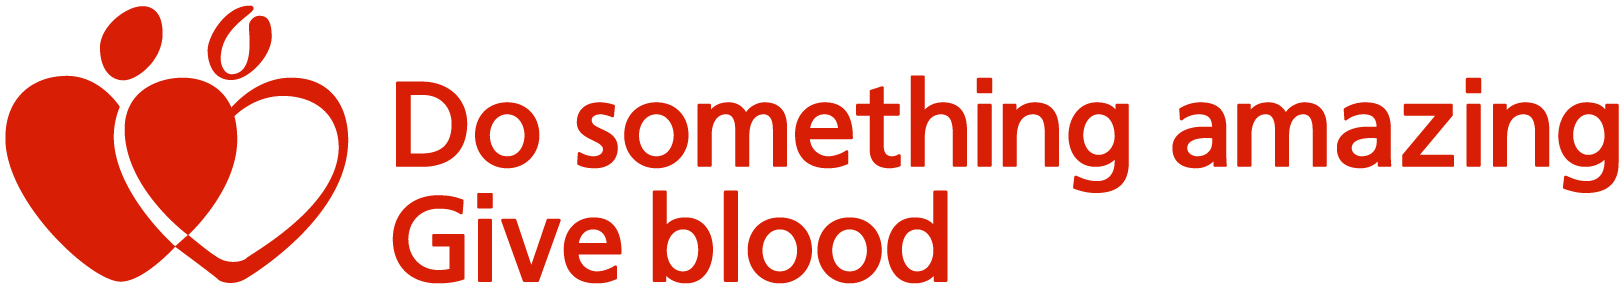 Do something amazing give blood